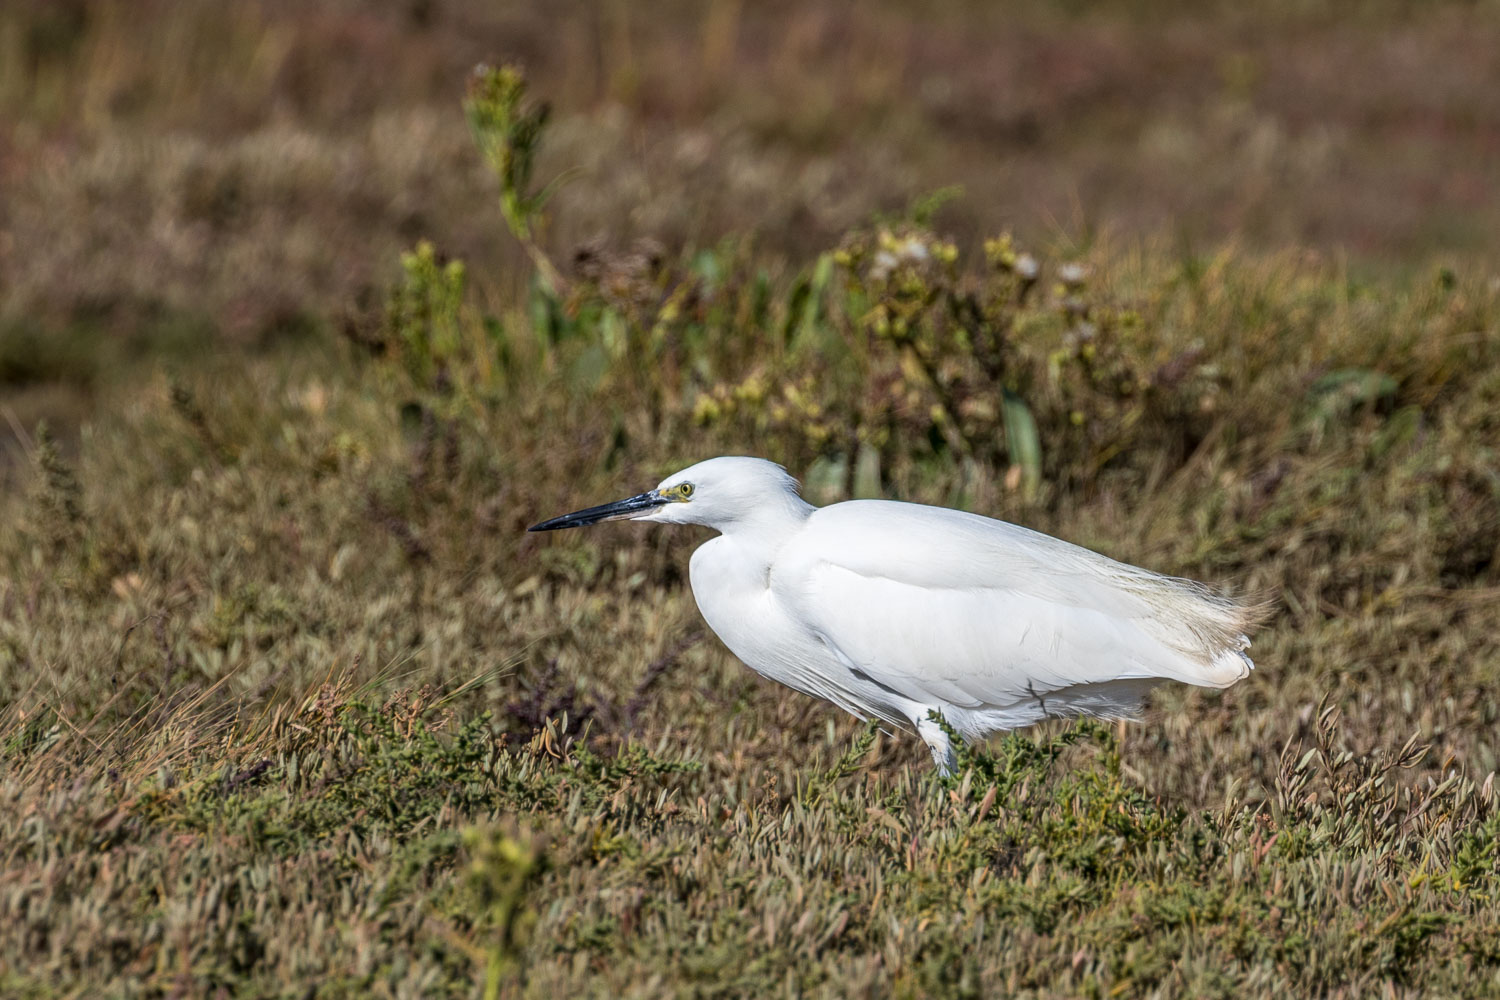 Thornham walk, little egret